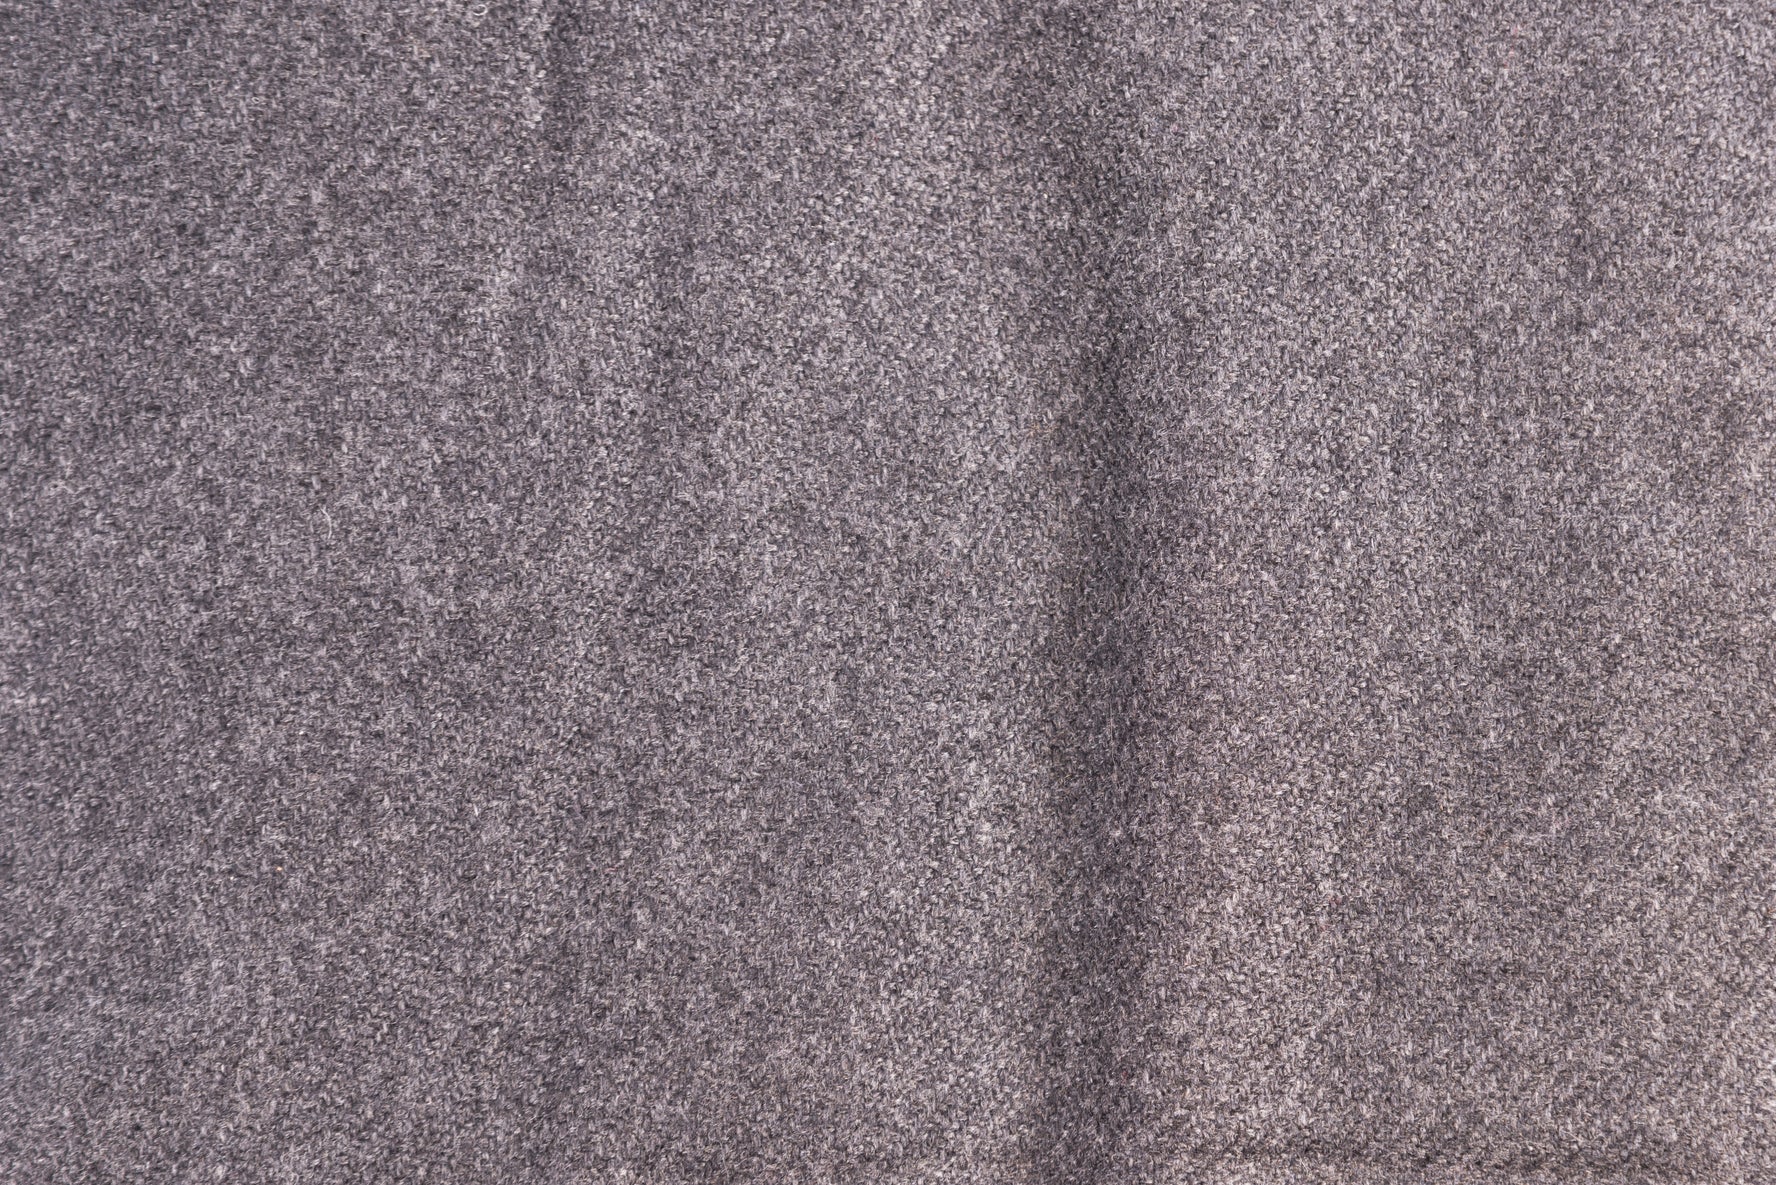 Coperta in cashmere nero grigio monocromatico